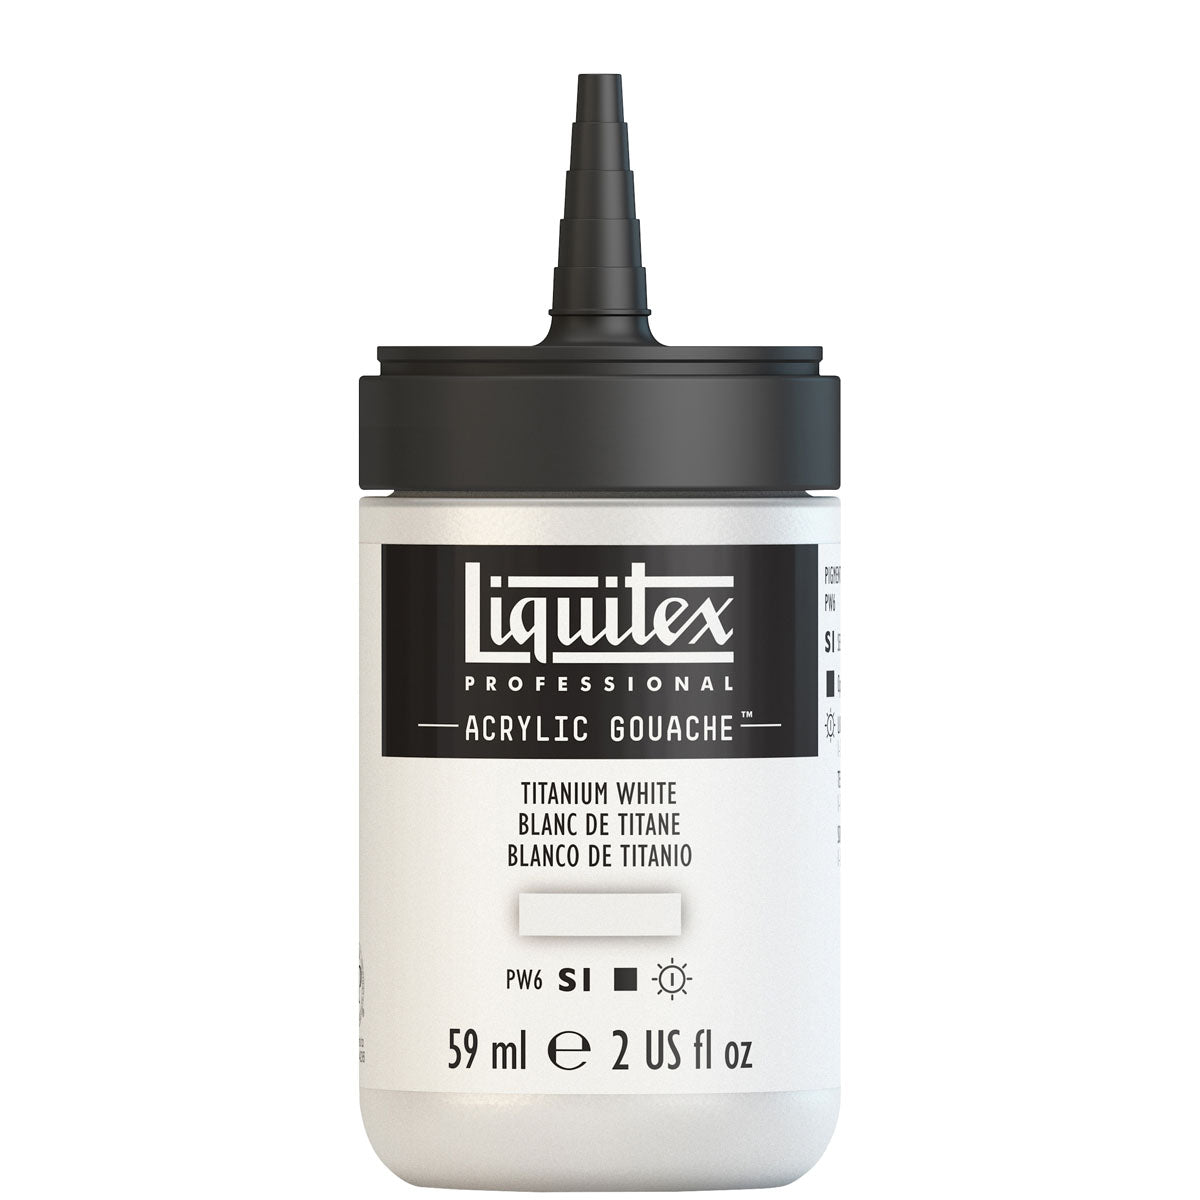 Liquitex - Acryl Gouache 59ml S1 - Titan Weiß